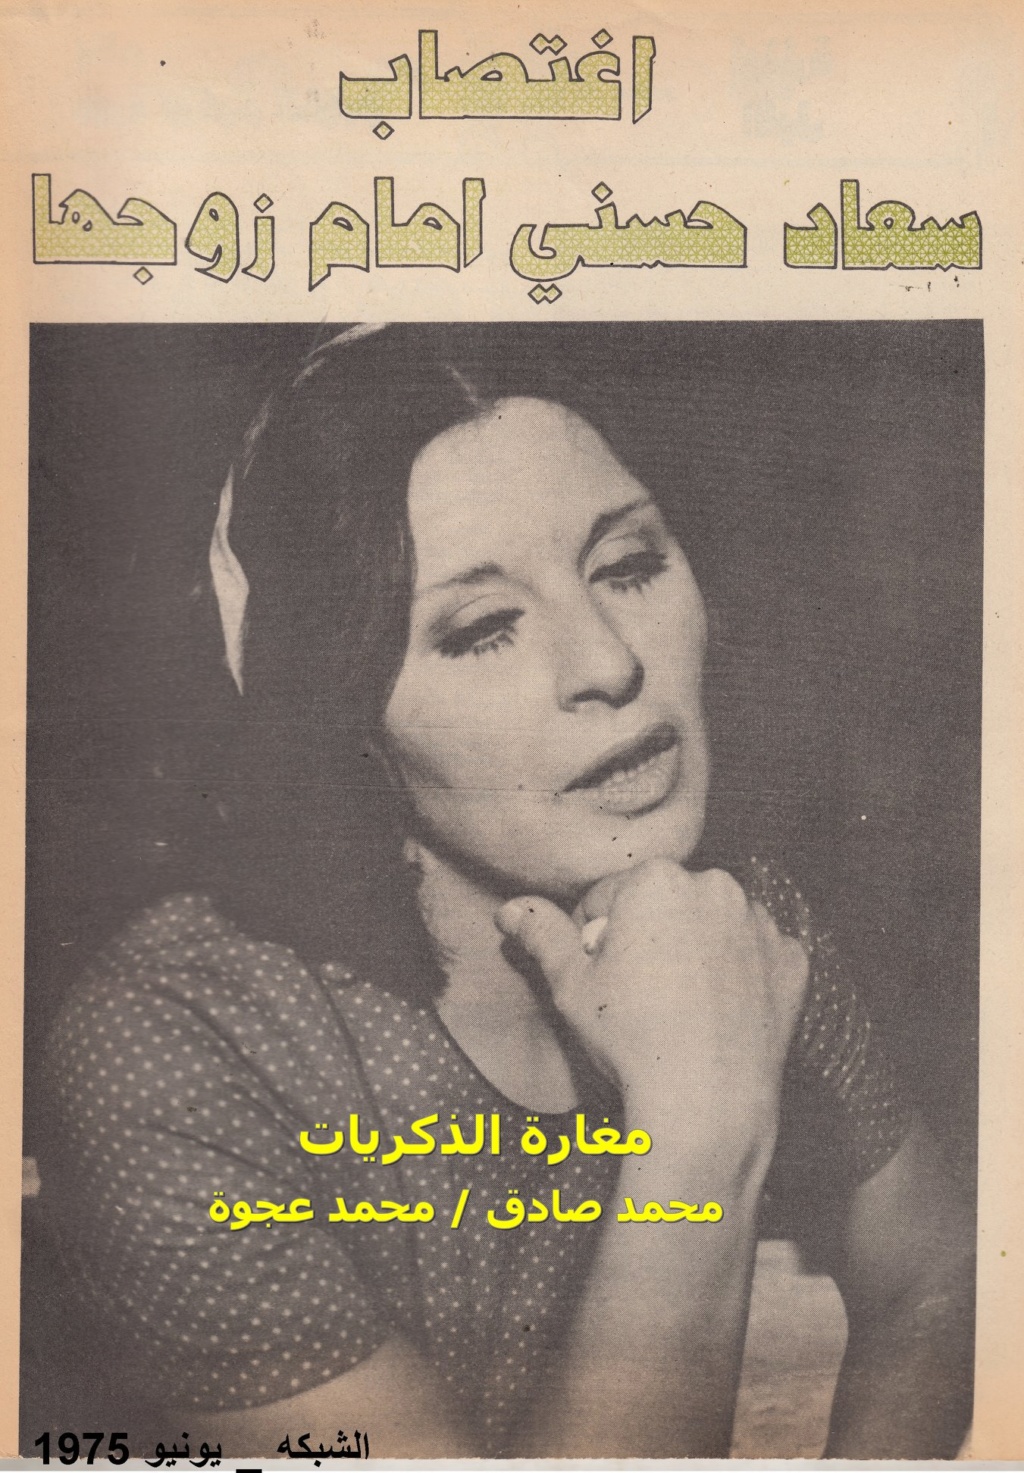 حوار صحفي : اغتصاب سعاد حسني امام زوجها 1975 م 1407